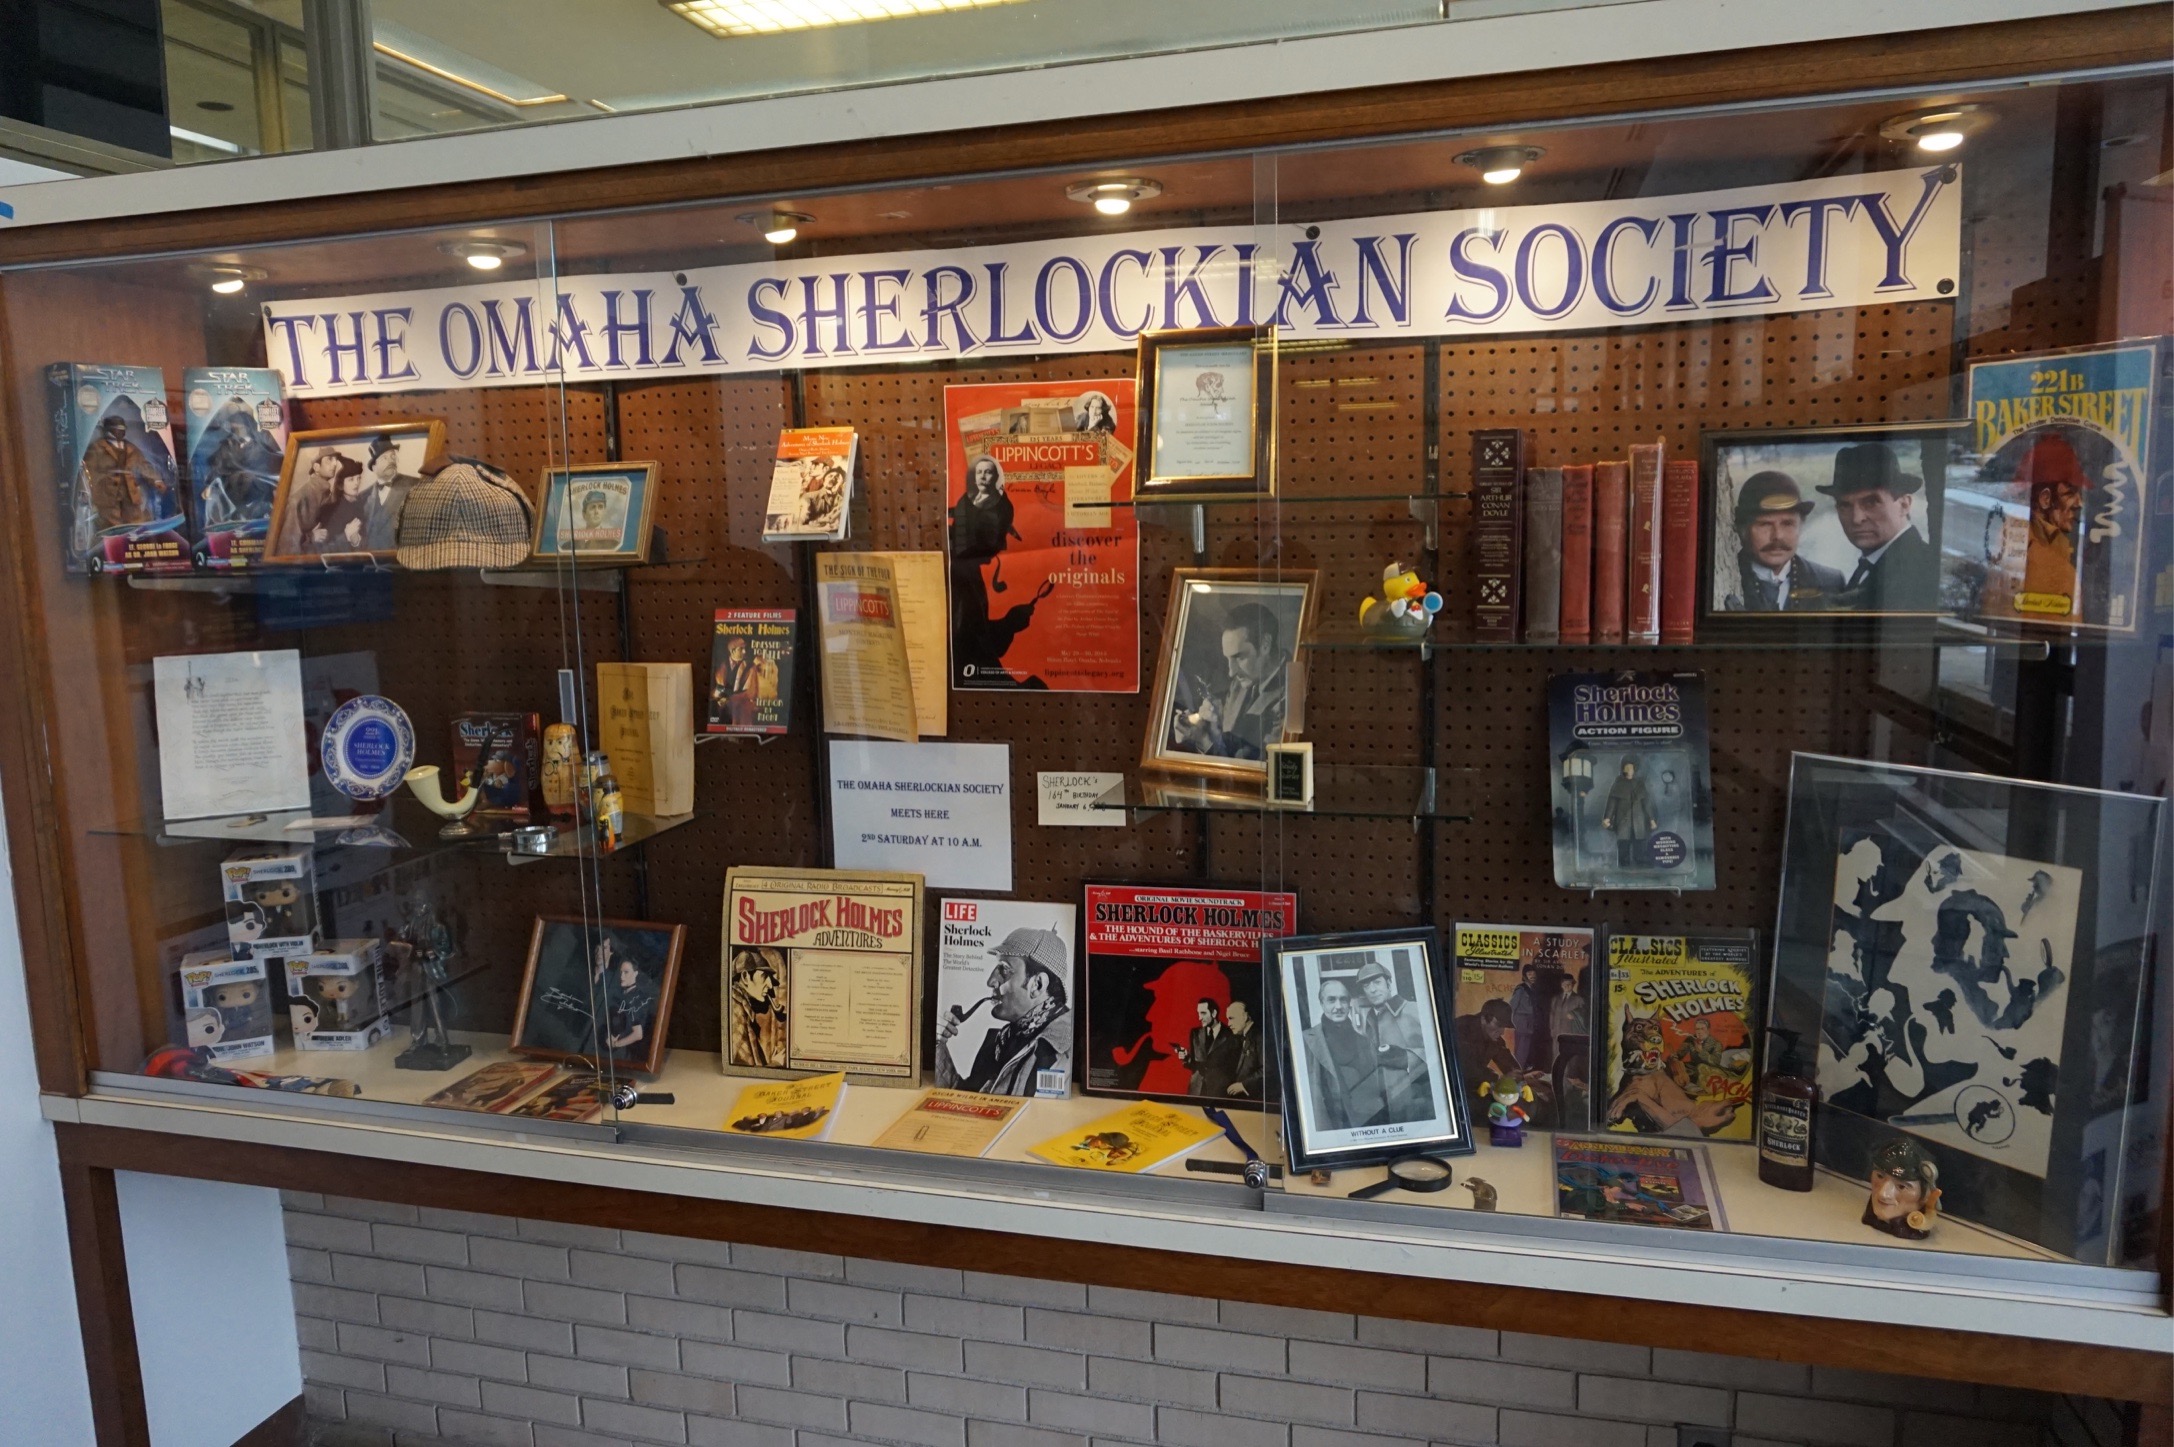 Society display at an Omaha library branch